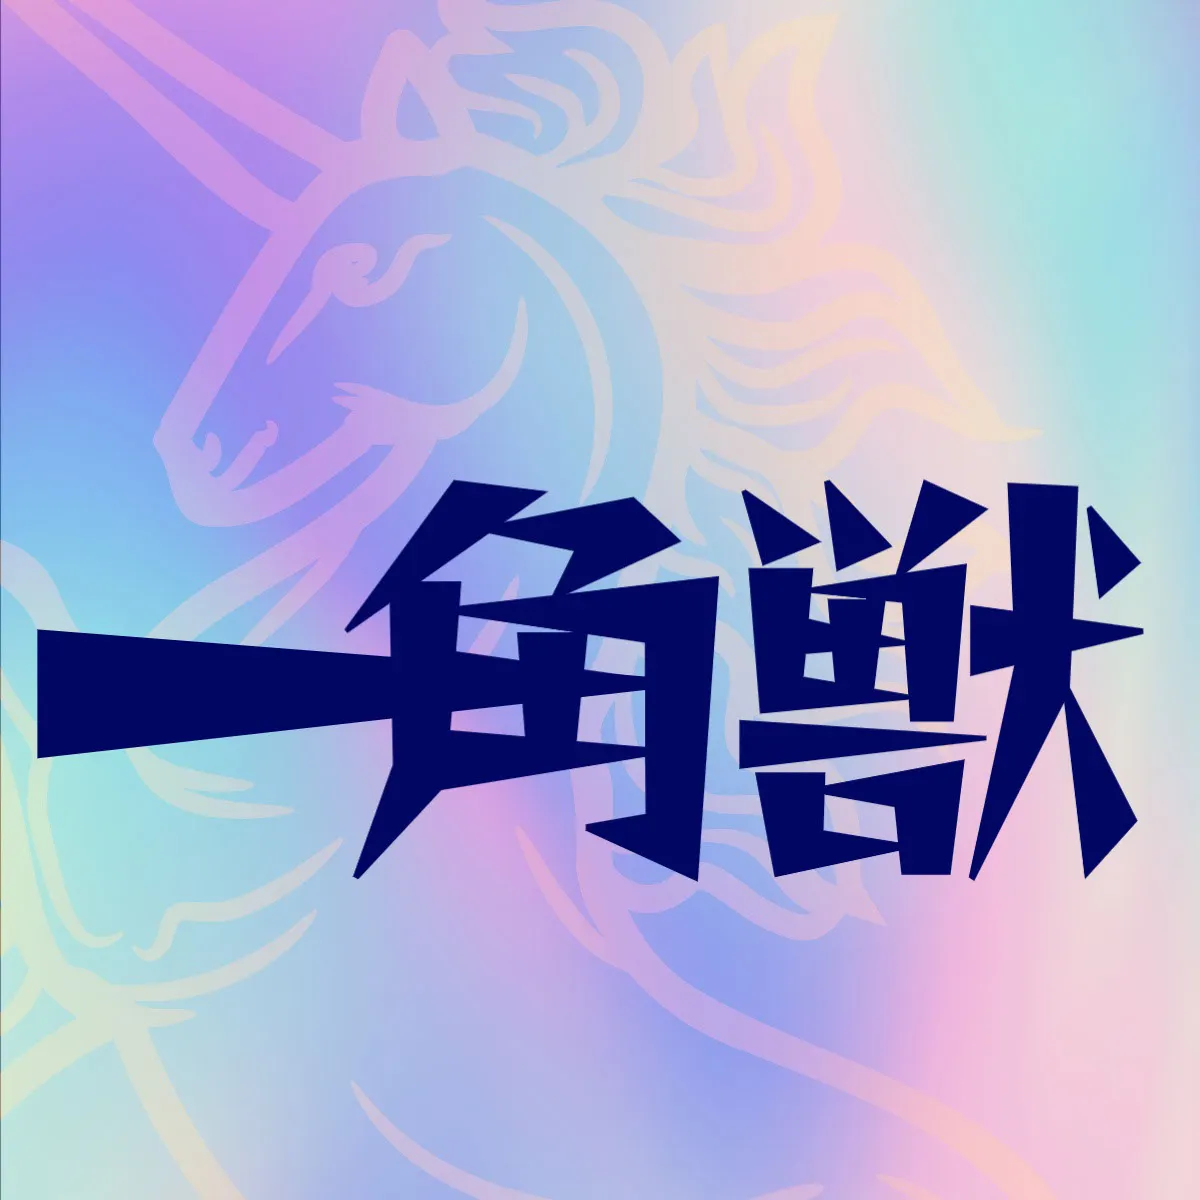 Unicorn band logo